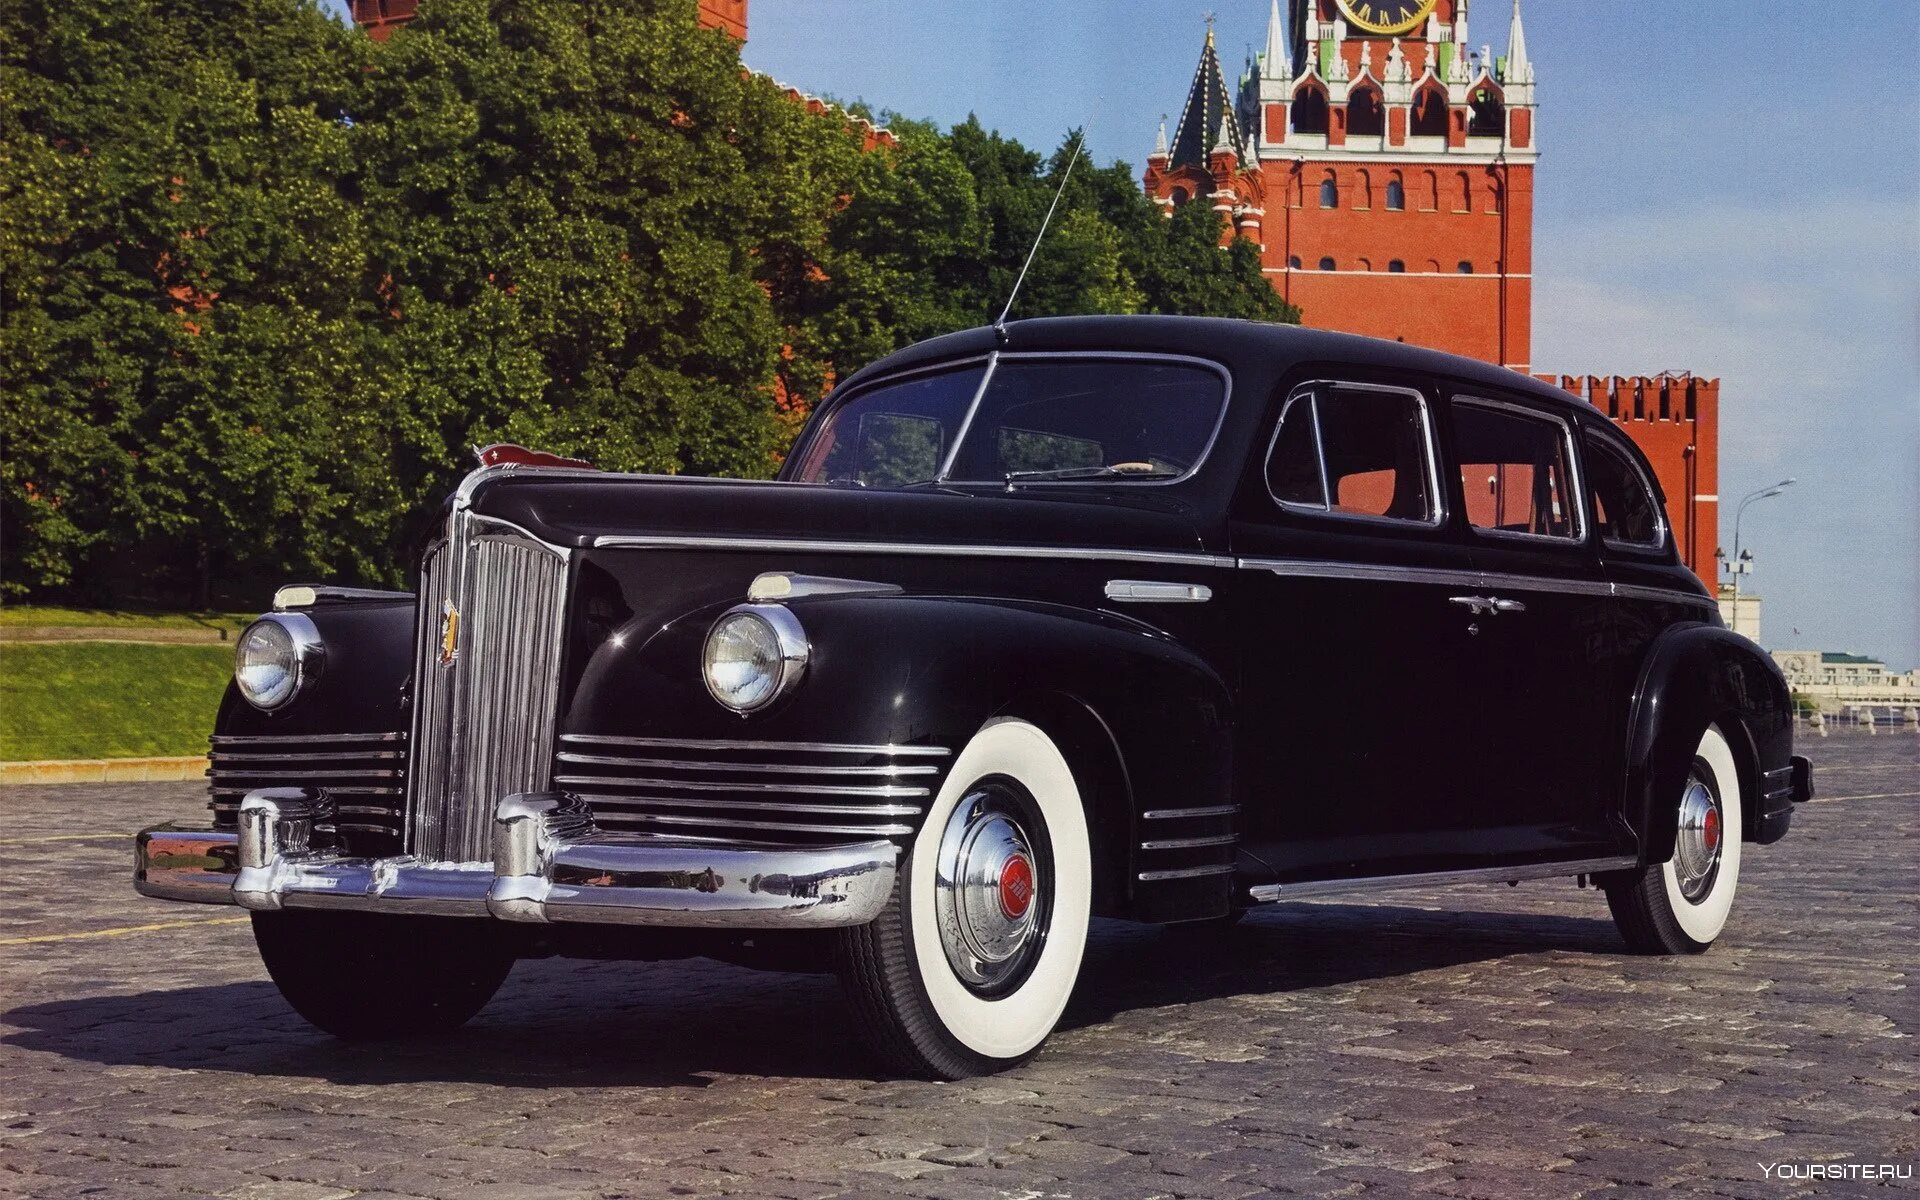 Soviet car